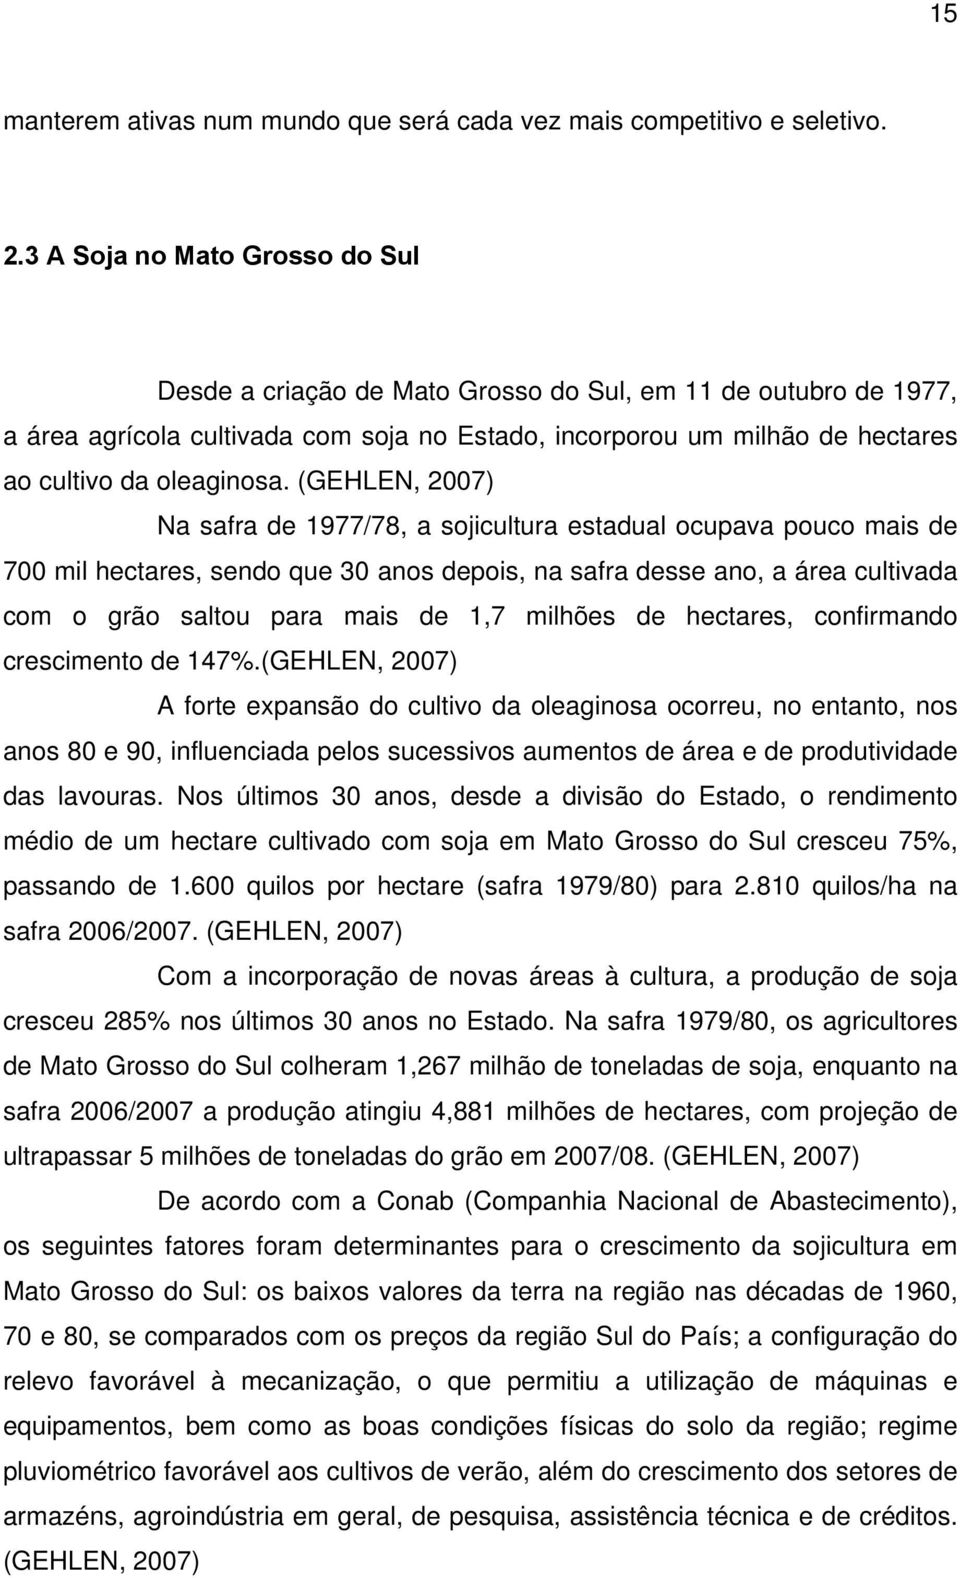 (GEHLEN, 2007) Na safra de 1977/78, a sojicultura estadual ocupava pouco mais de 700 mil hectares, sendo que 30 anos depois, na safra desse ano, a área cultivada com o grão saltou para mais de 1,7